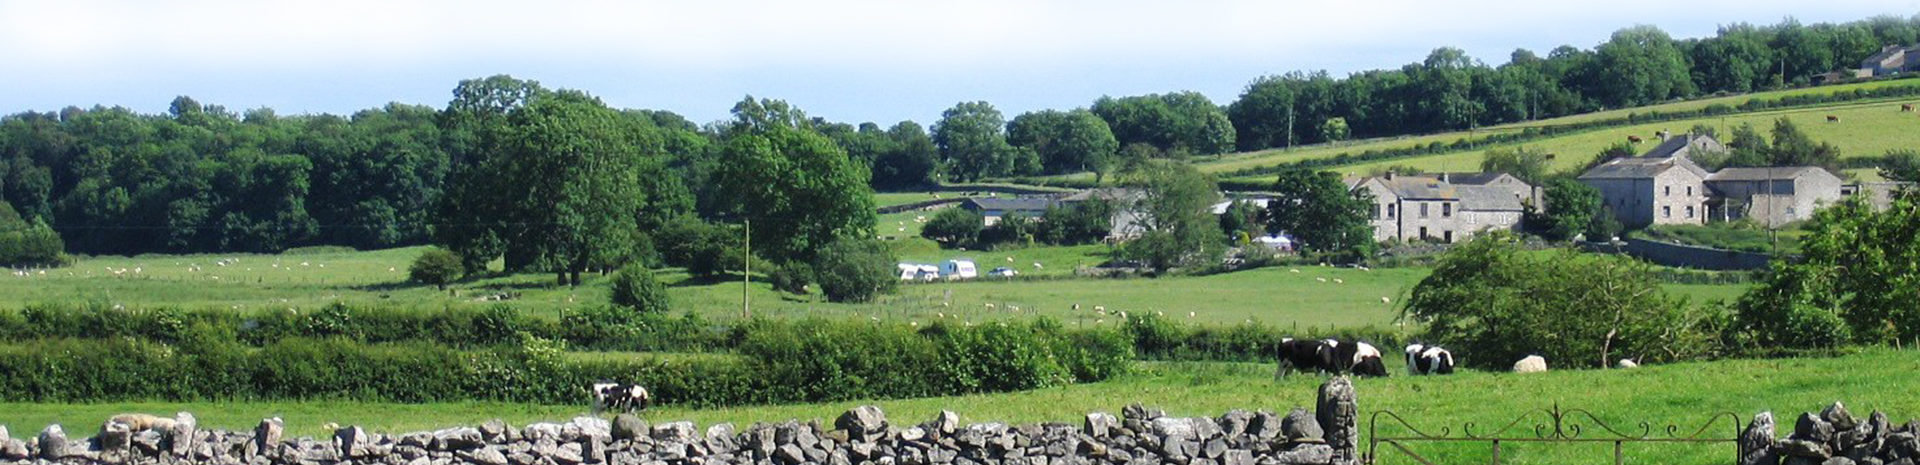 Brackenthwite Farm